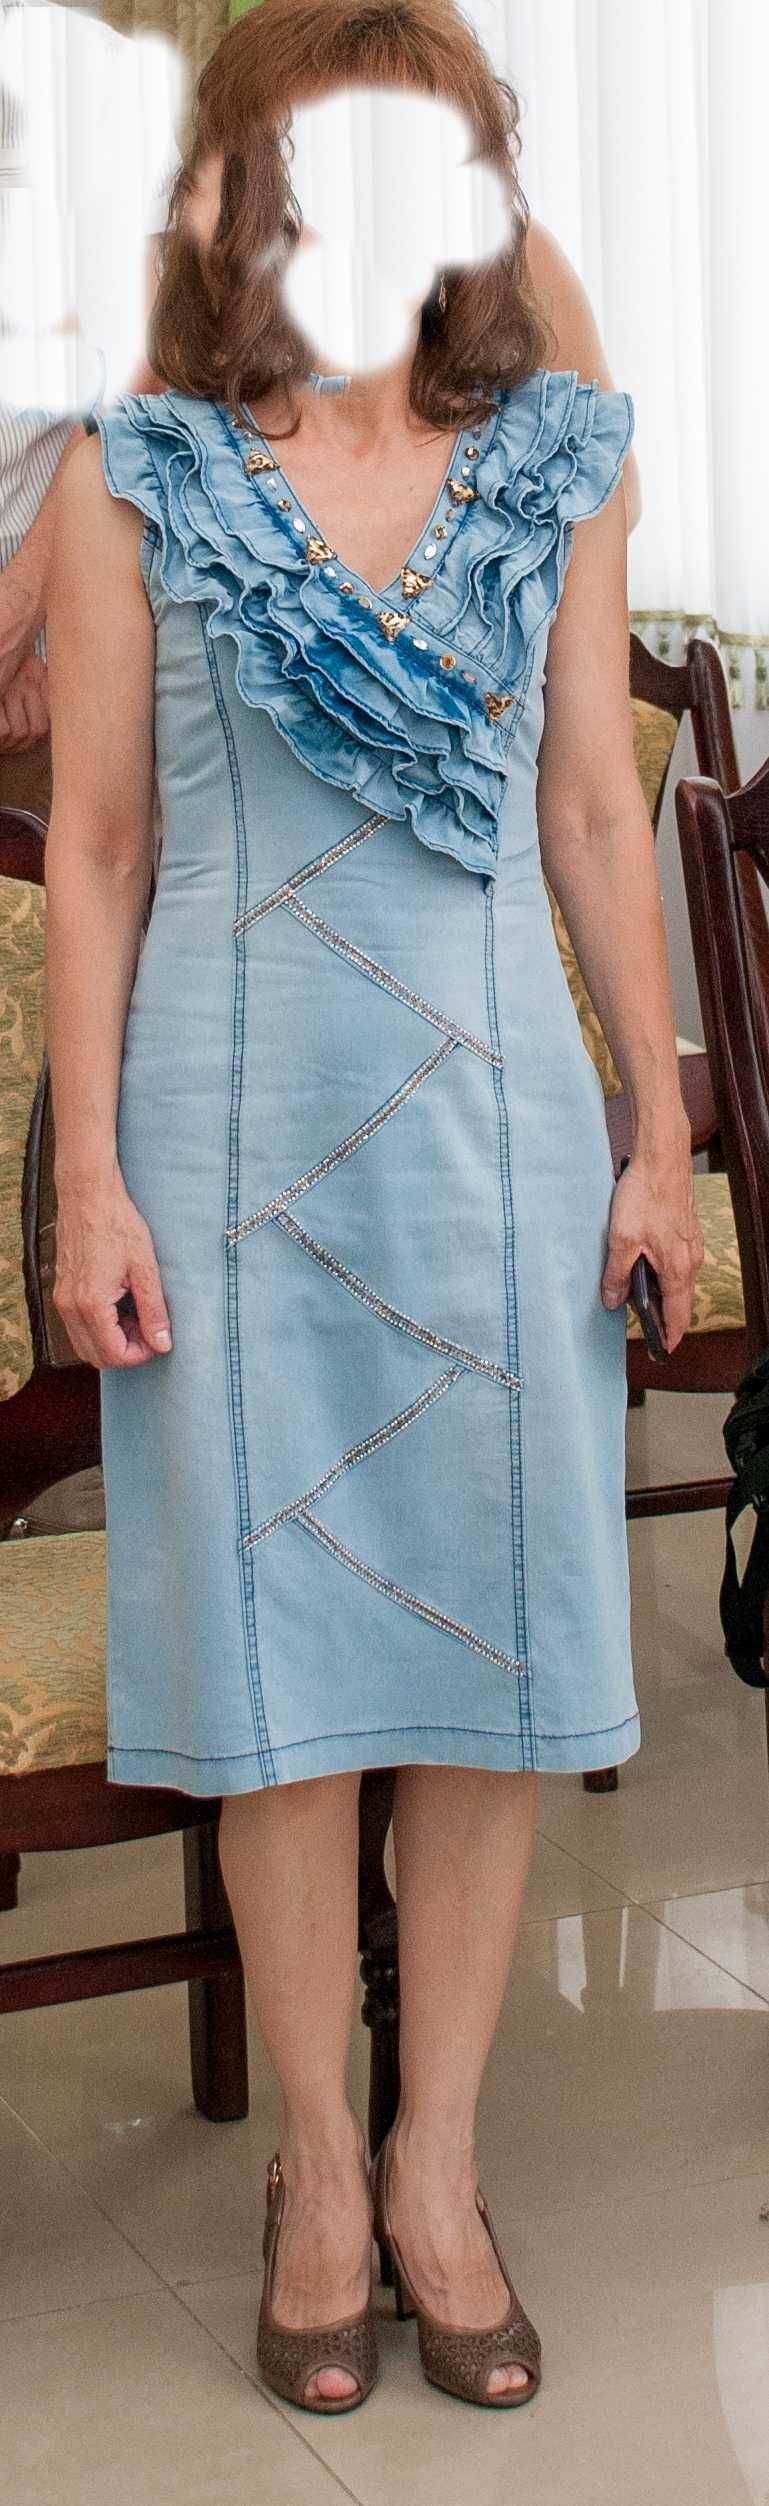 Летнее джинсовое платье голубое